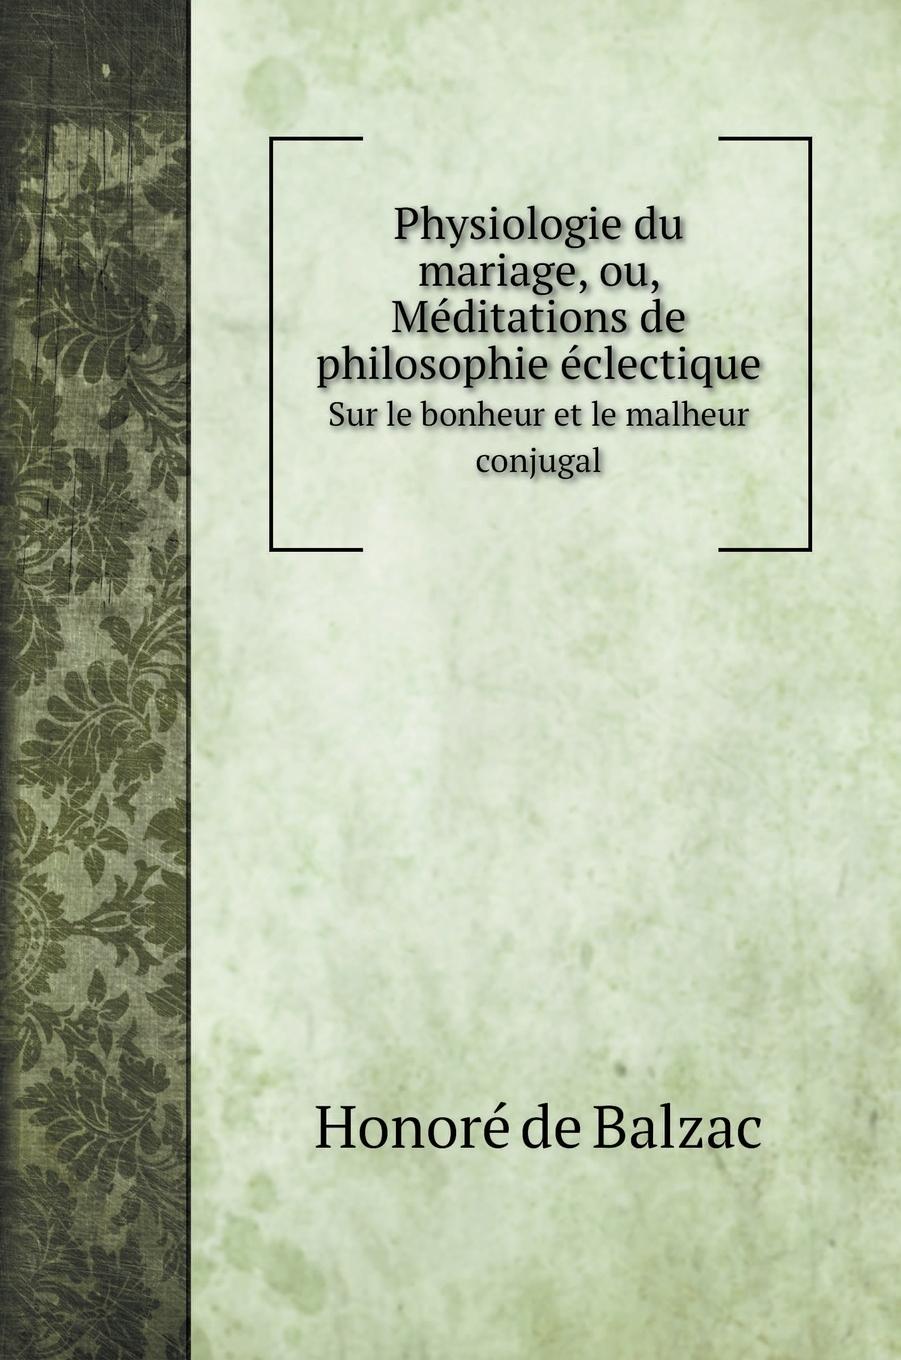 Physiologie du mariage, ou, Méditations de philosophie éclectique - Balzac, Honoré de